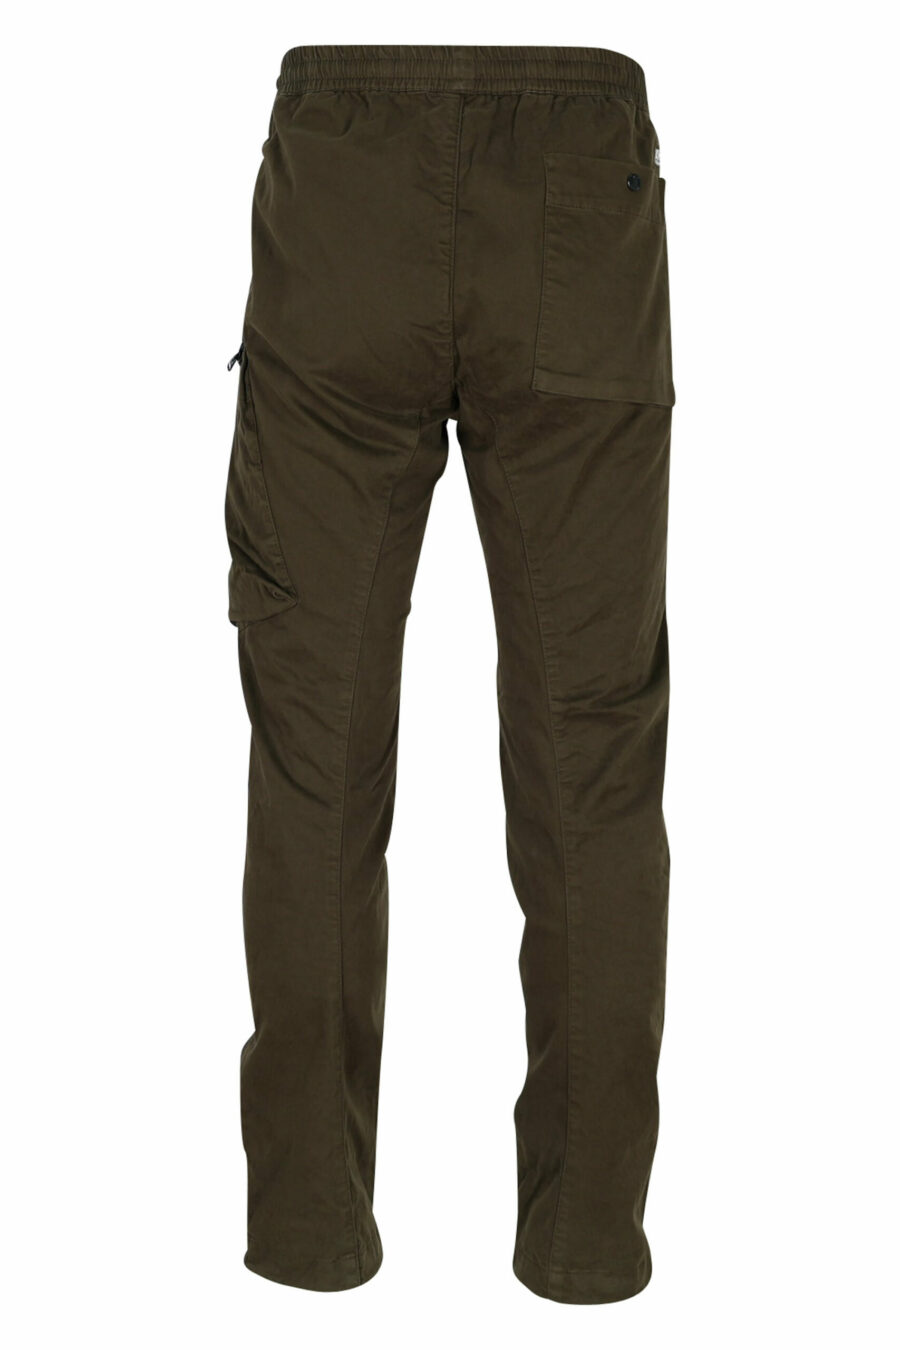 Militärgrüne Stretch-Satin-Hose mit Seitentasche und Logo-Linse - 7620943537833 2 skaliert